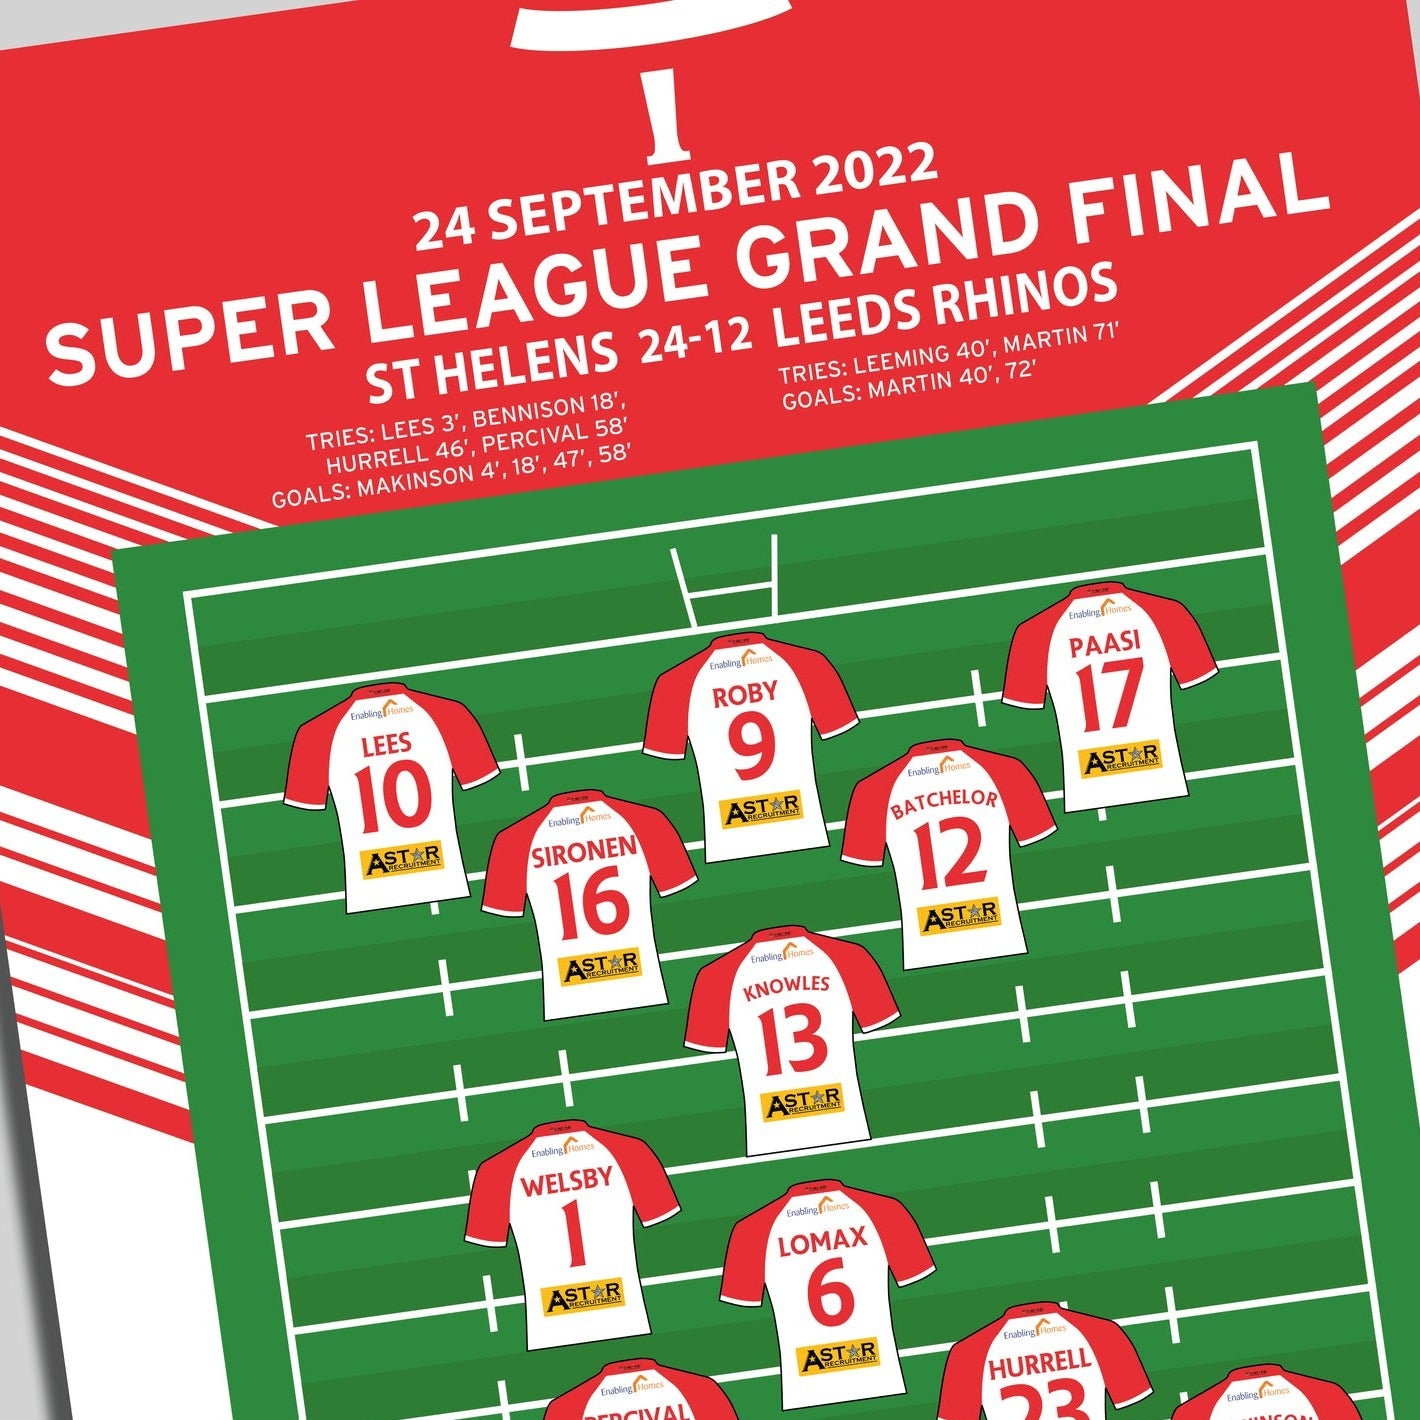 St Helens 24-12 Leeds Rhinos - Super League Grand Final 2022